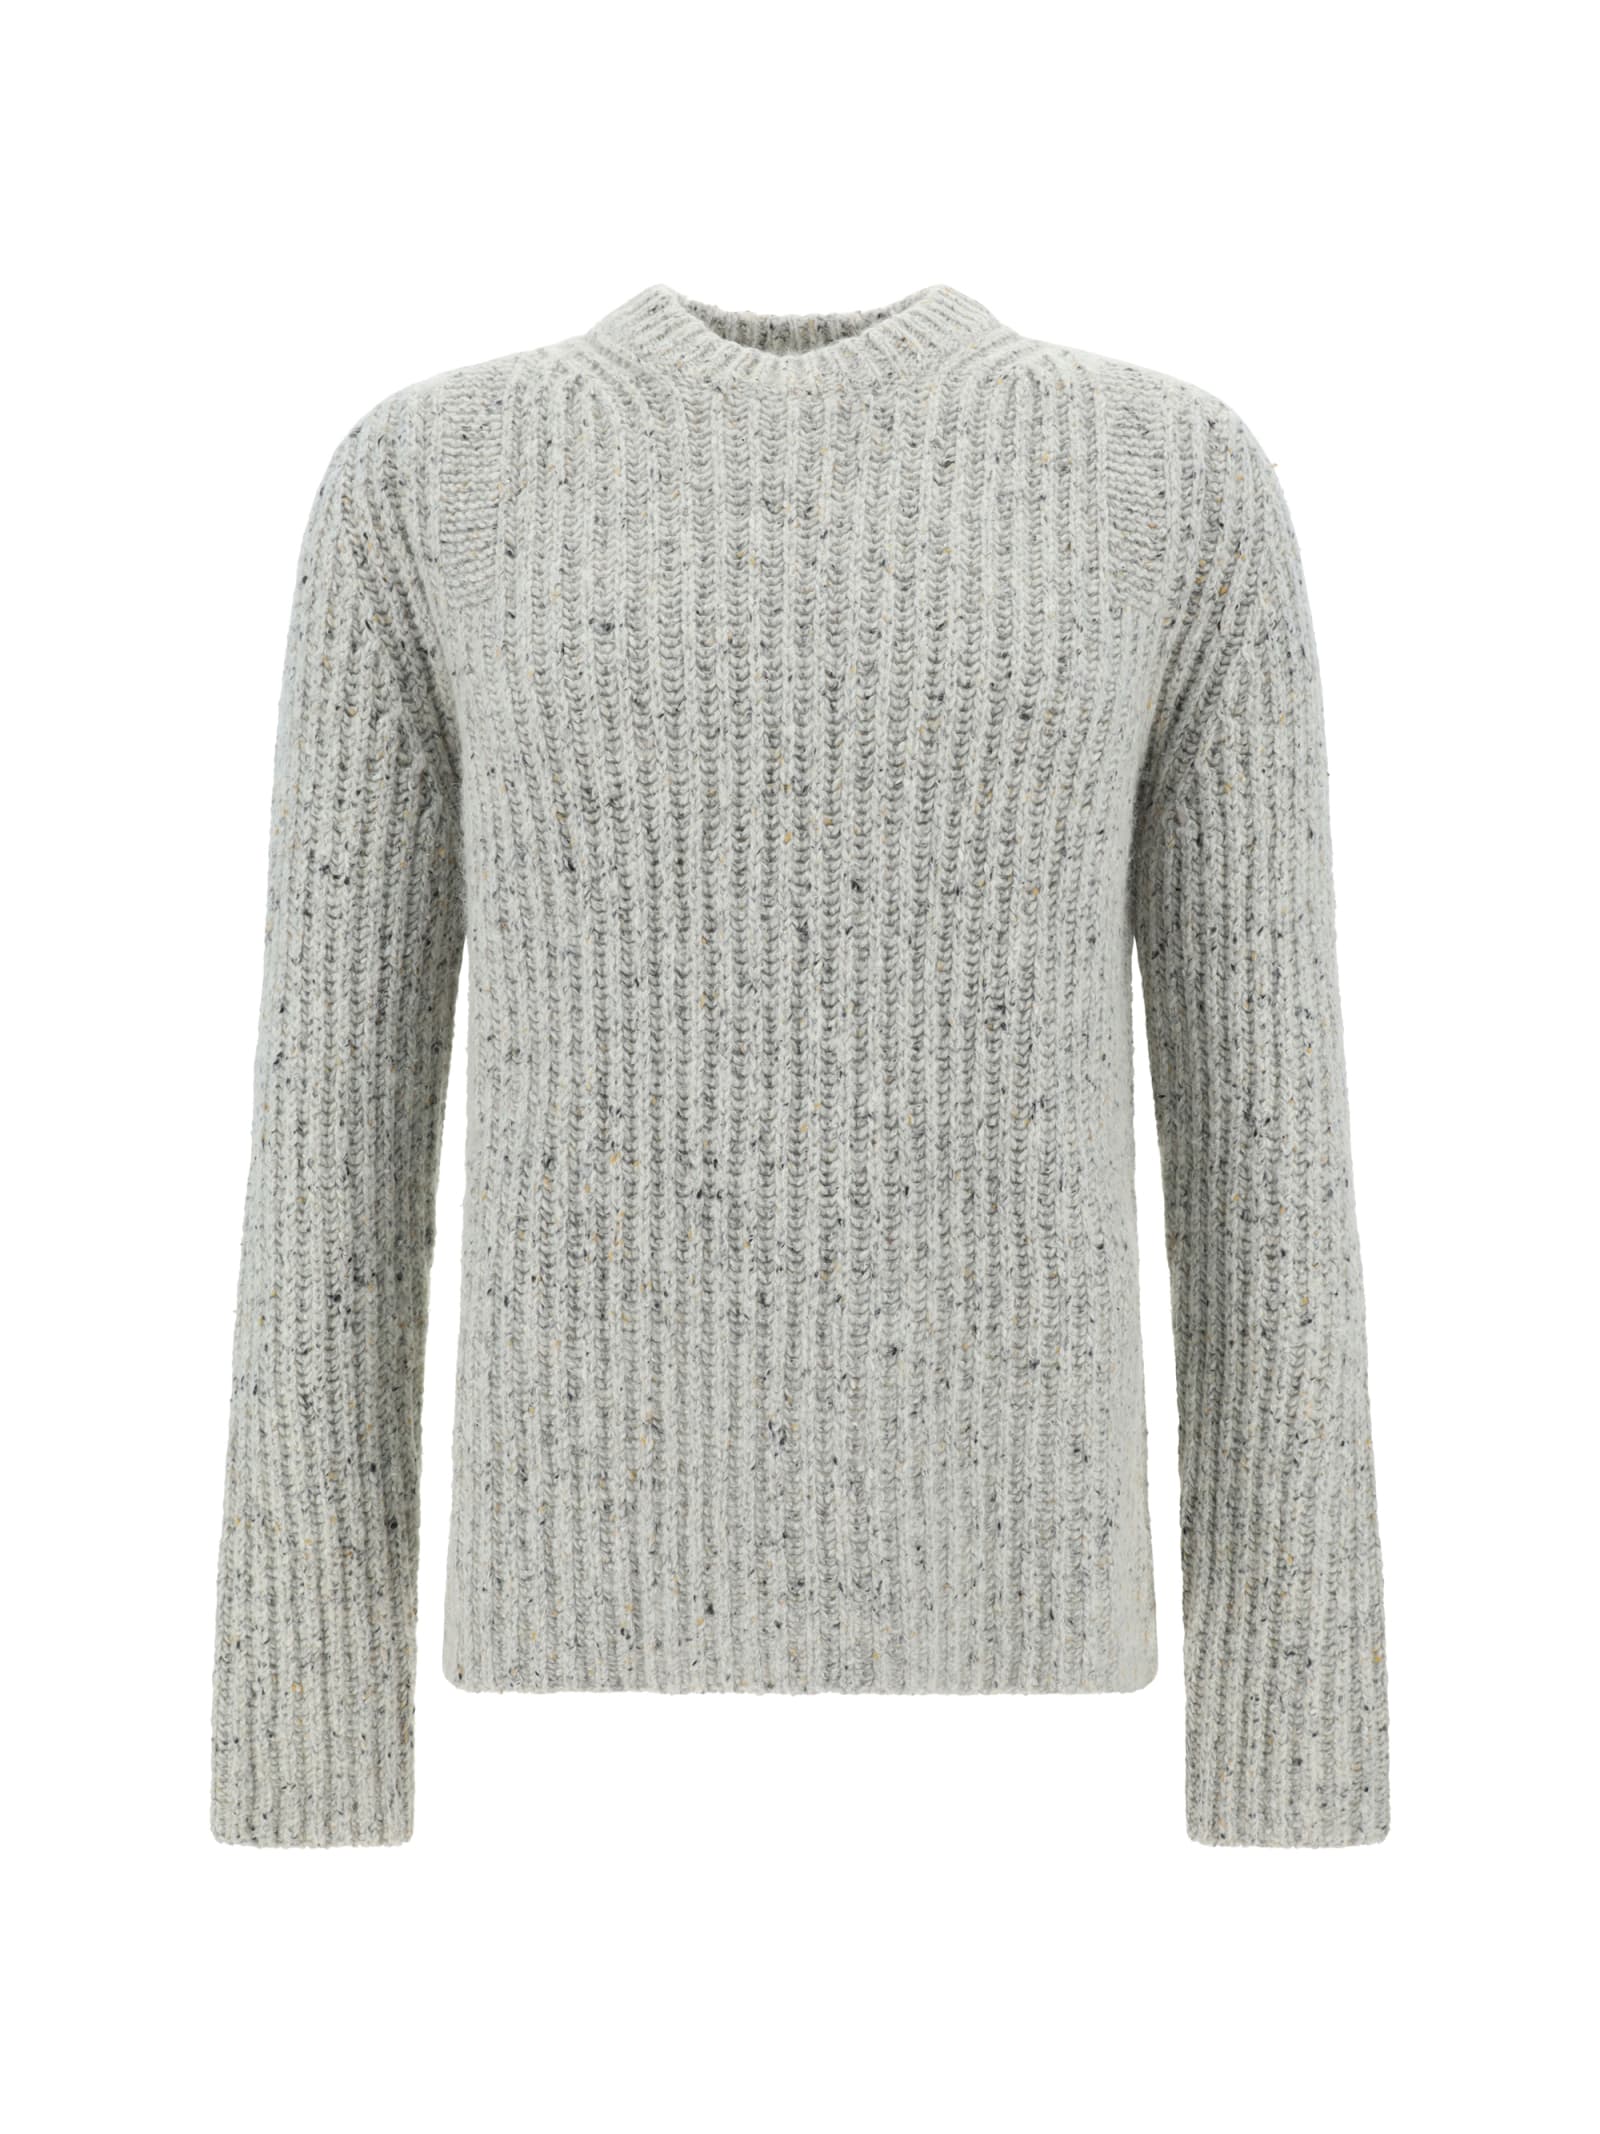 Jil Sander Sweater In Gray